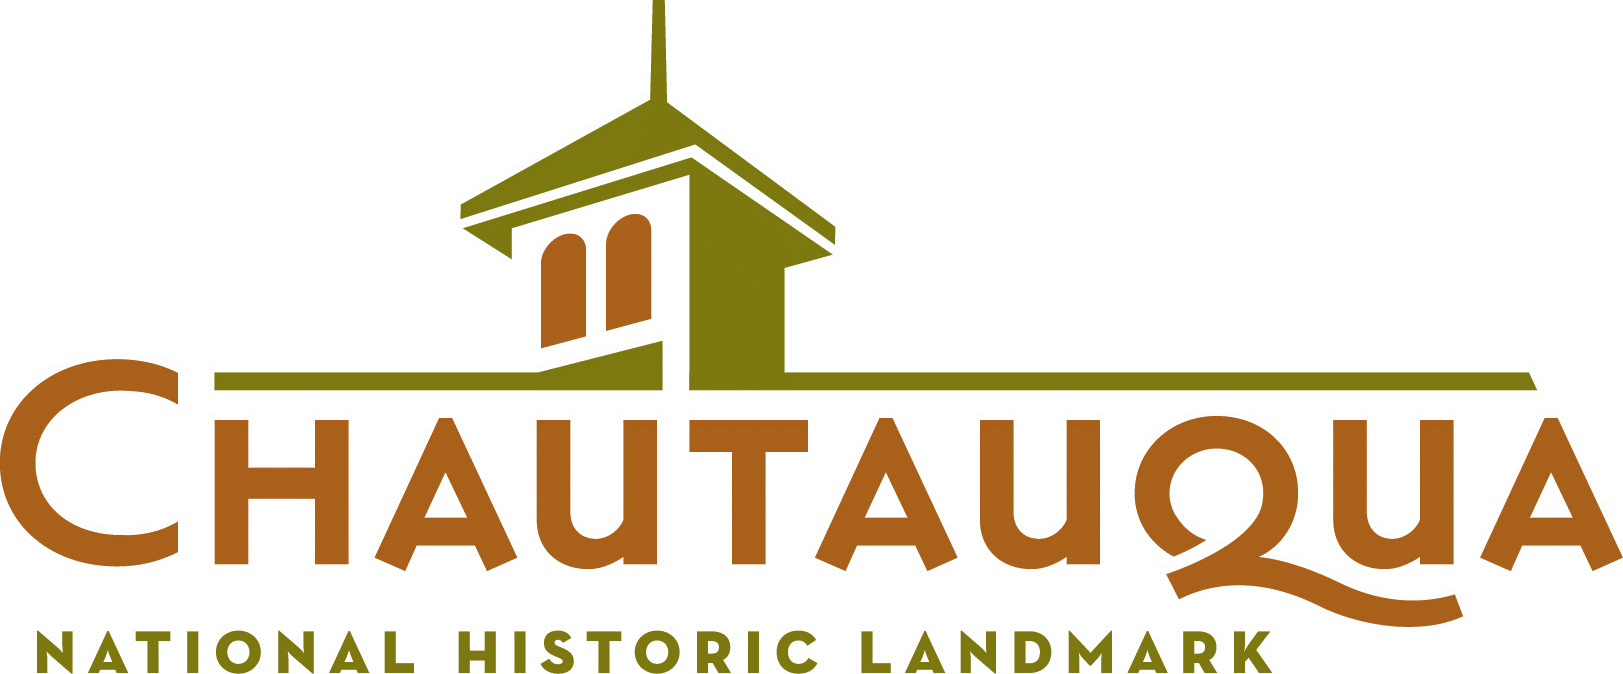 The Colorado Chautauqua Association